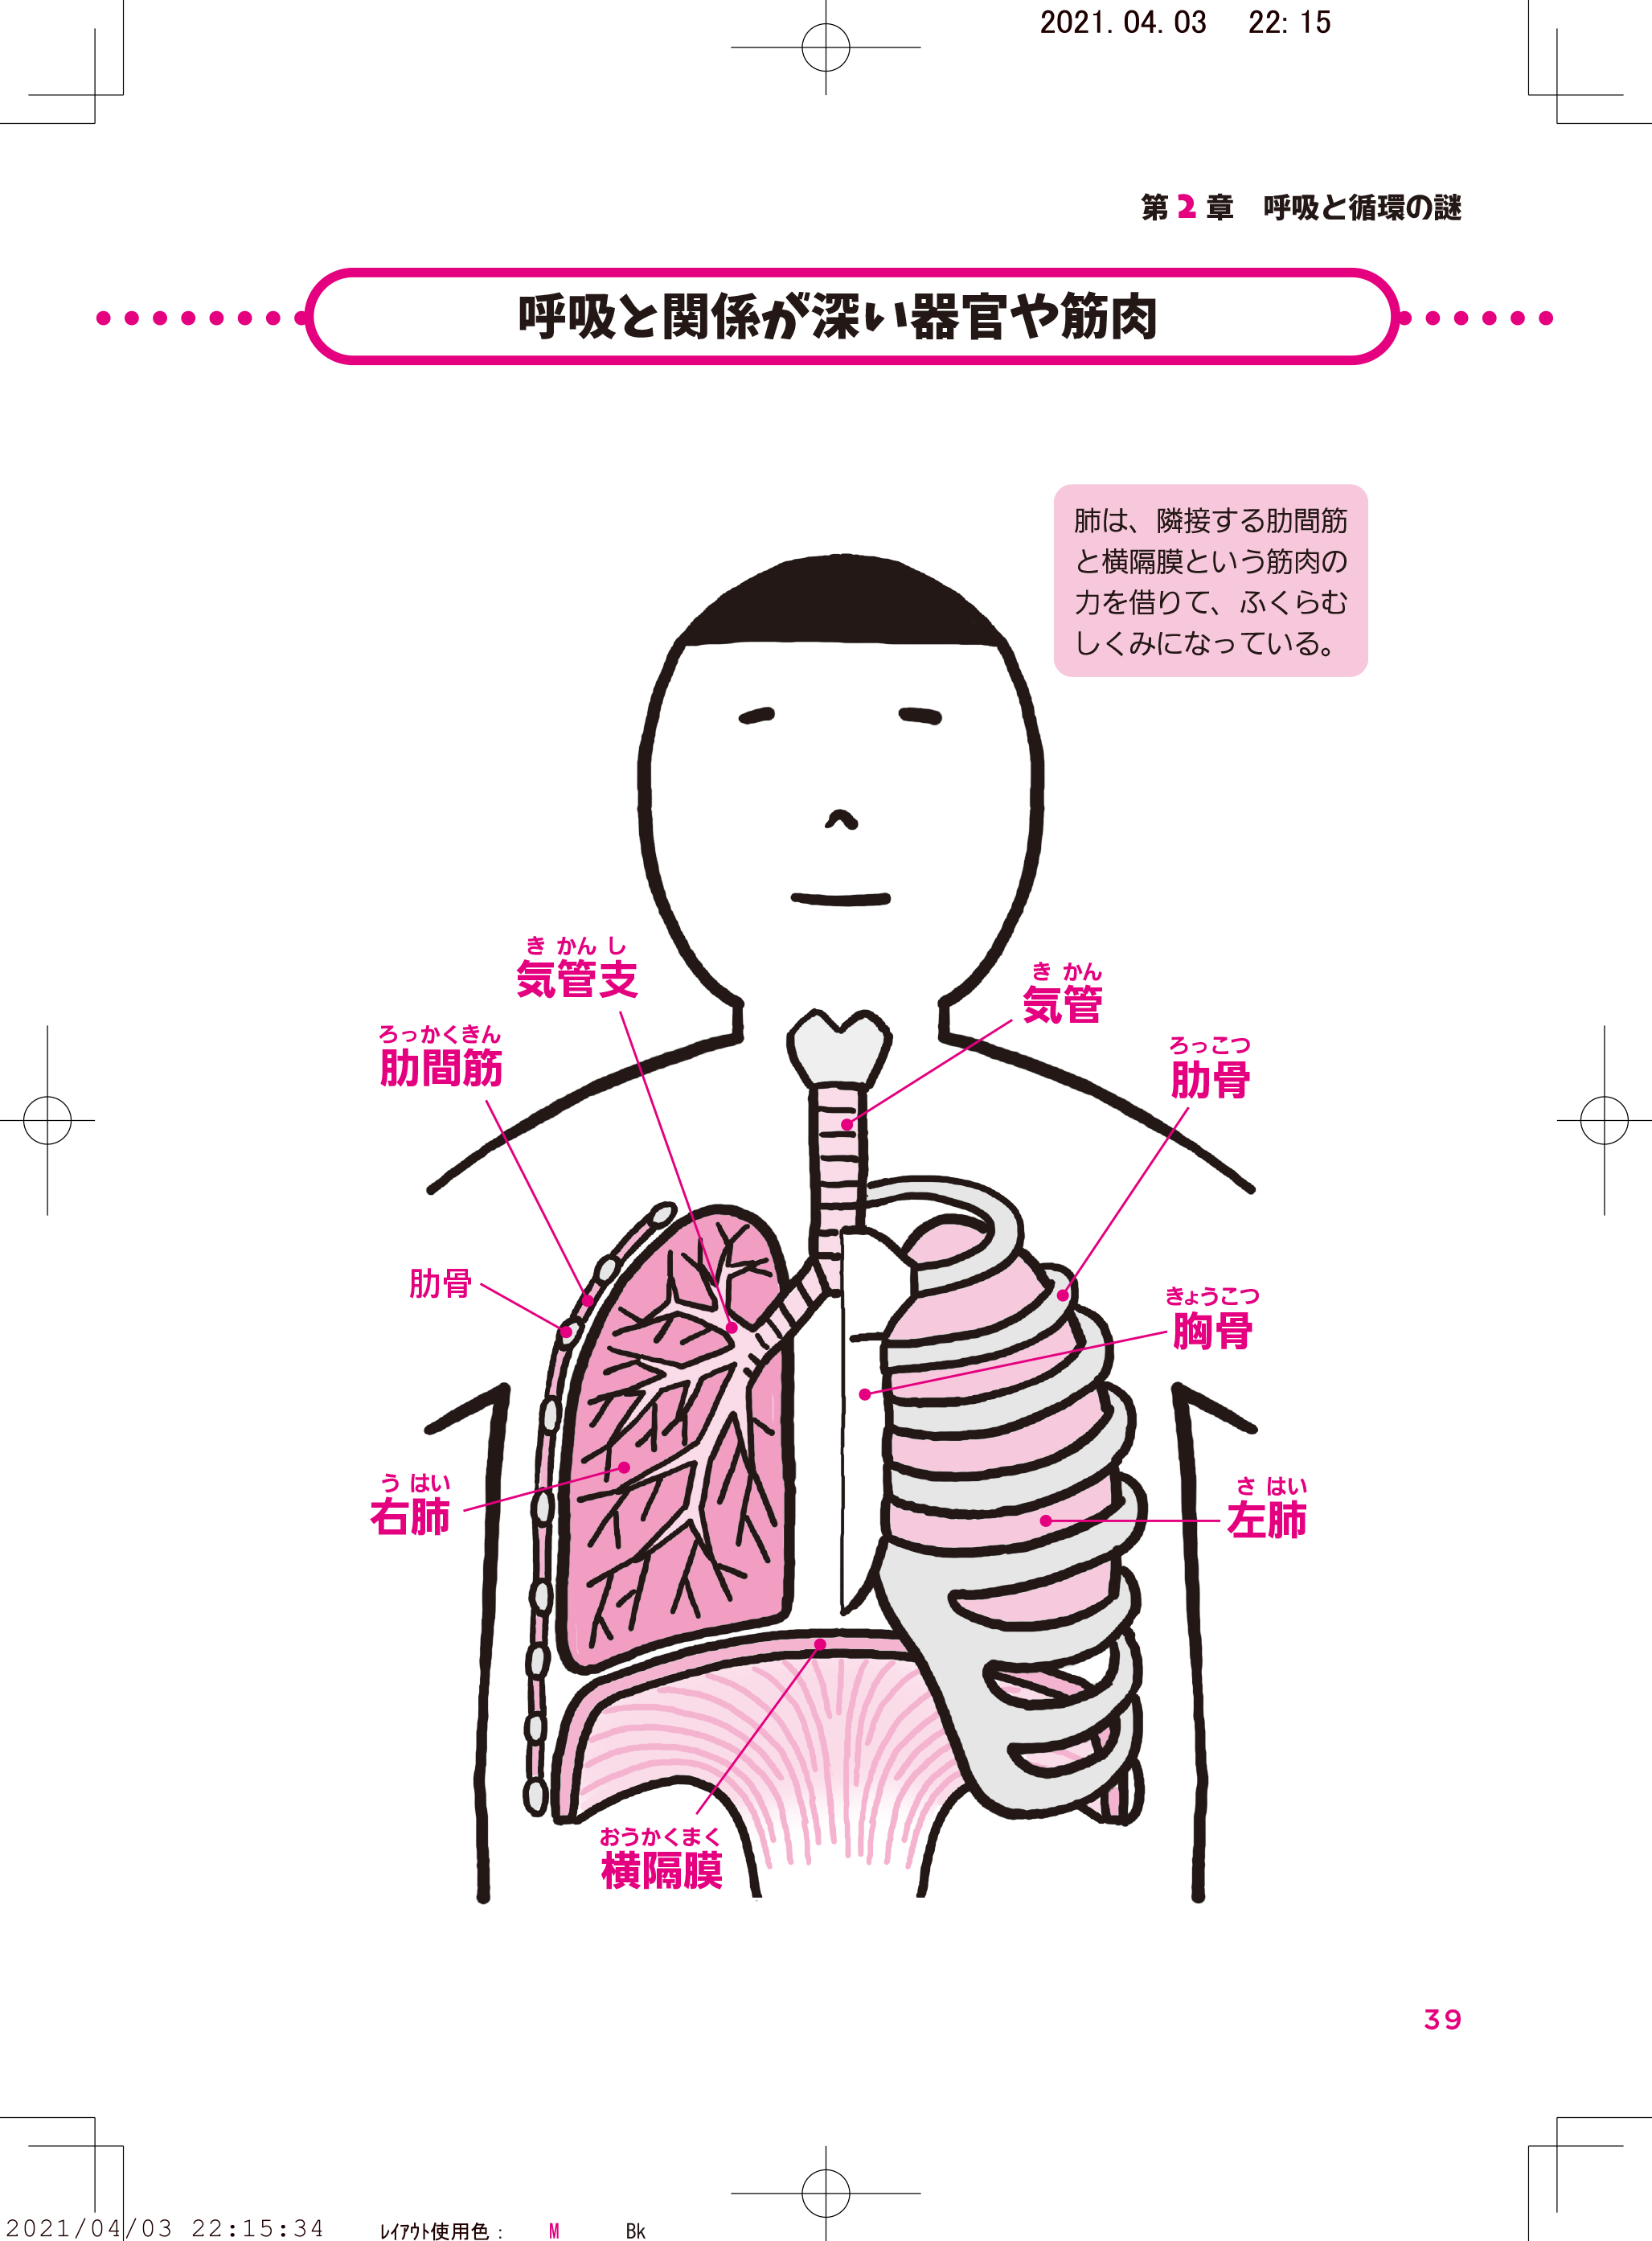 肺には みずからふくらむ力がないの 解剖学の話